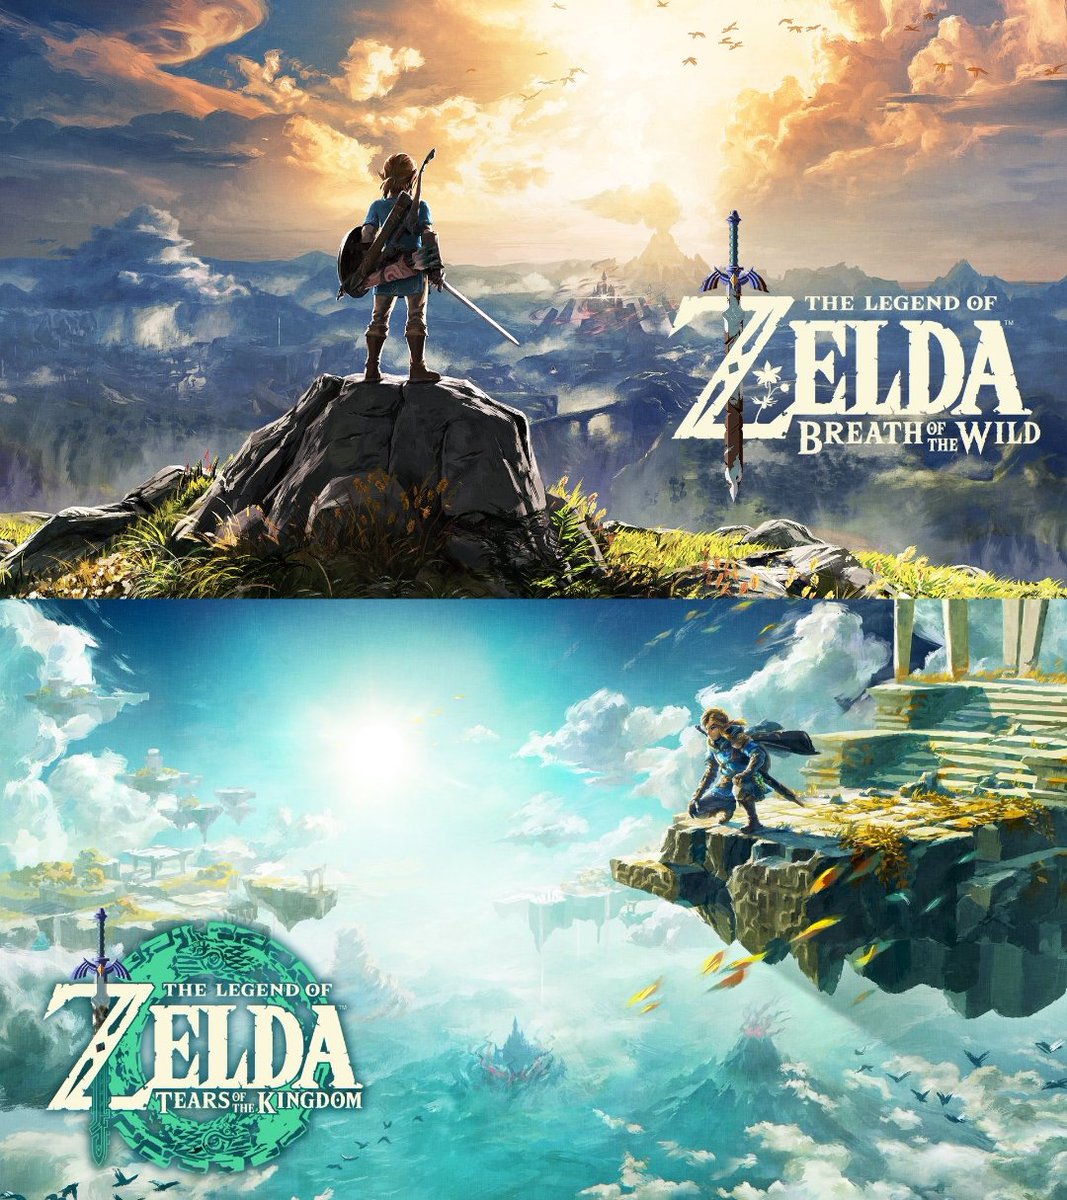 🍃 | En la era pre-Switch, nunca un Zelda había superado la cifra de +15M de copias vendidas.

Con los nuevos datos, Breath of the Wild llega a 33,56M y Tears of the Kingdom alcanza los 20,61M.

Son 54,17M sólo en esta generación y representan el 40% de la ventas de toda la saga.